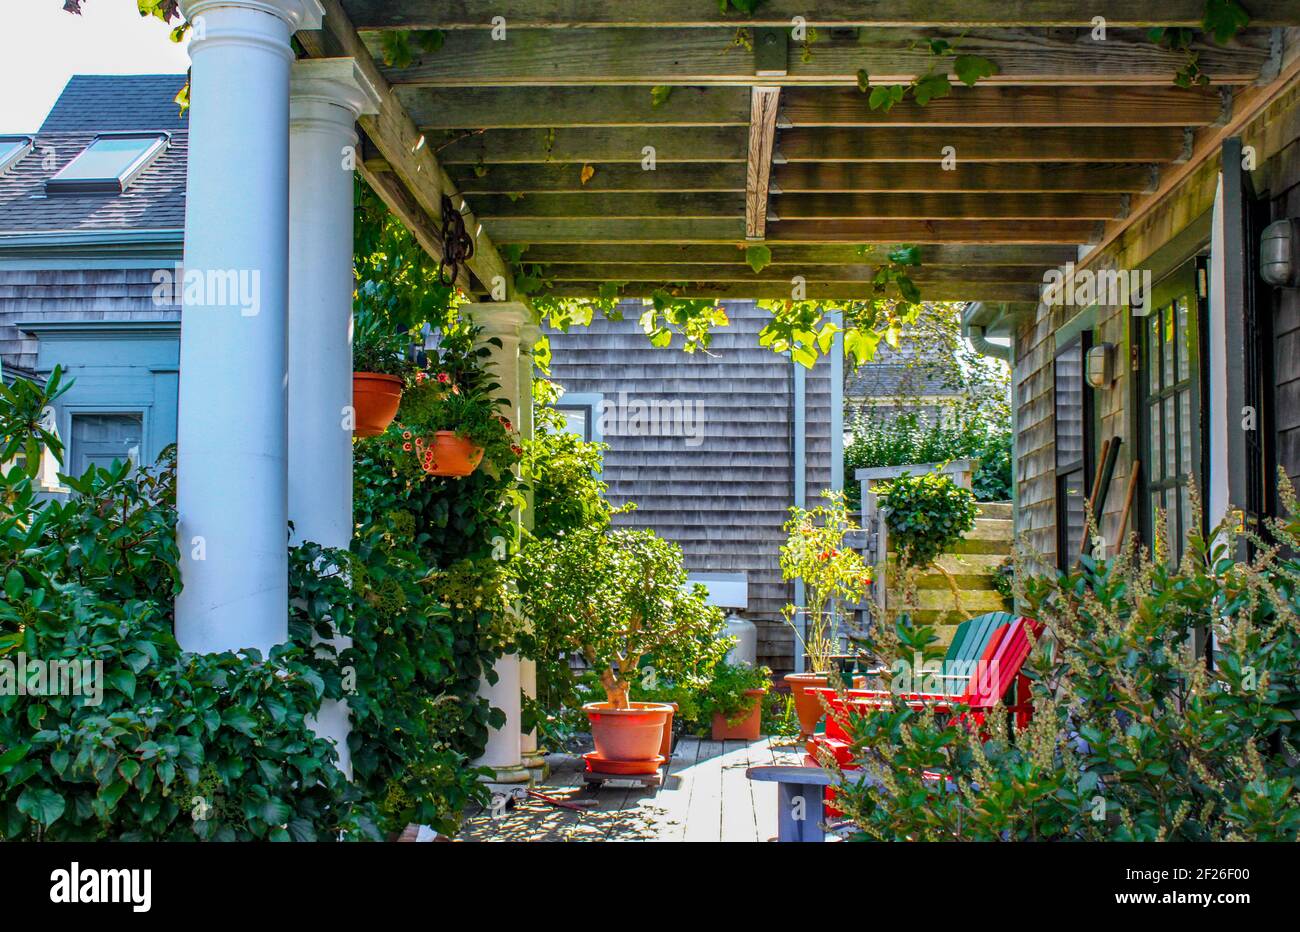 Klappbretthaus mit schattiger Veranda mit Pergola Dach mit Trauben Reben und andere Pflanzen wachsen in Fülle und bunten Adirondack Stühle Stockfoto